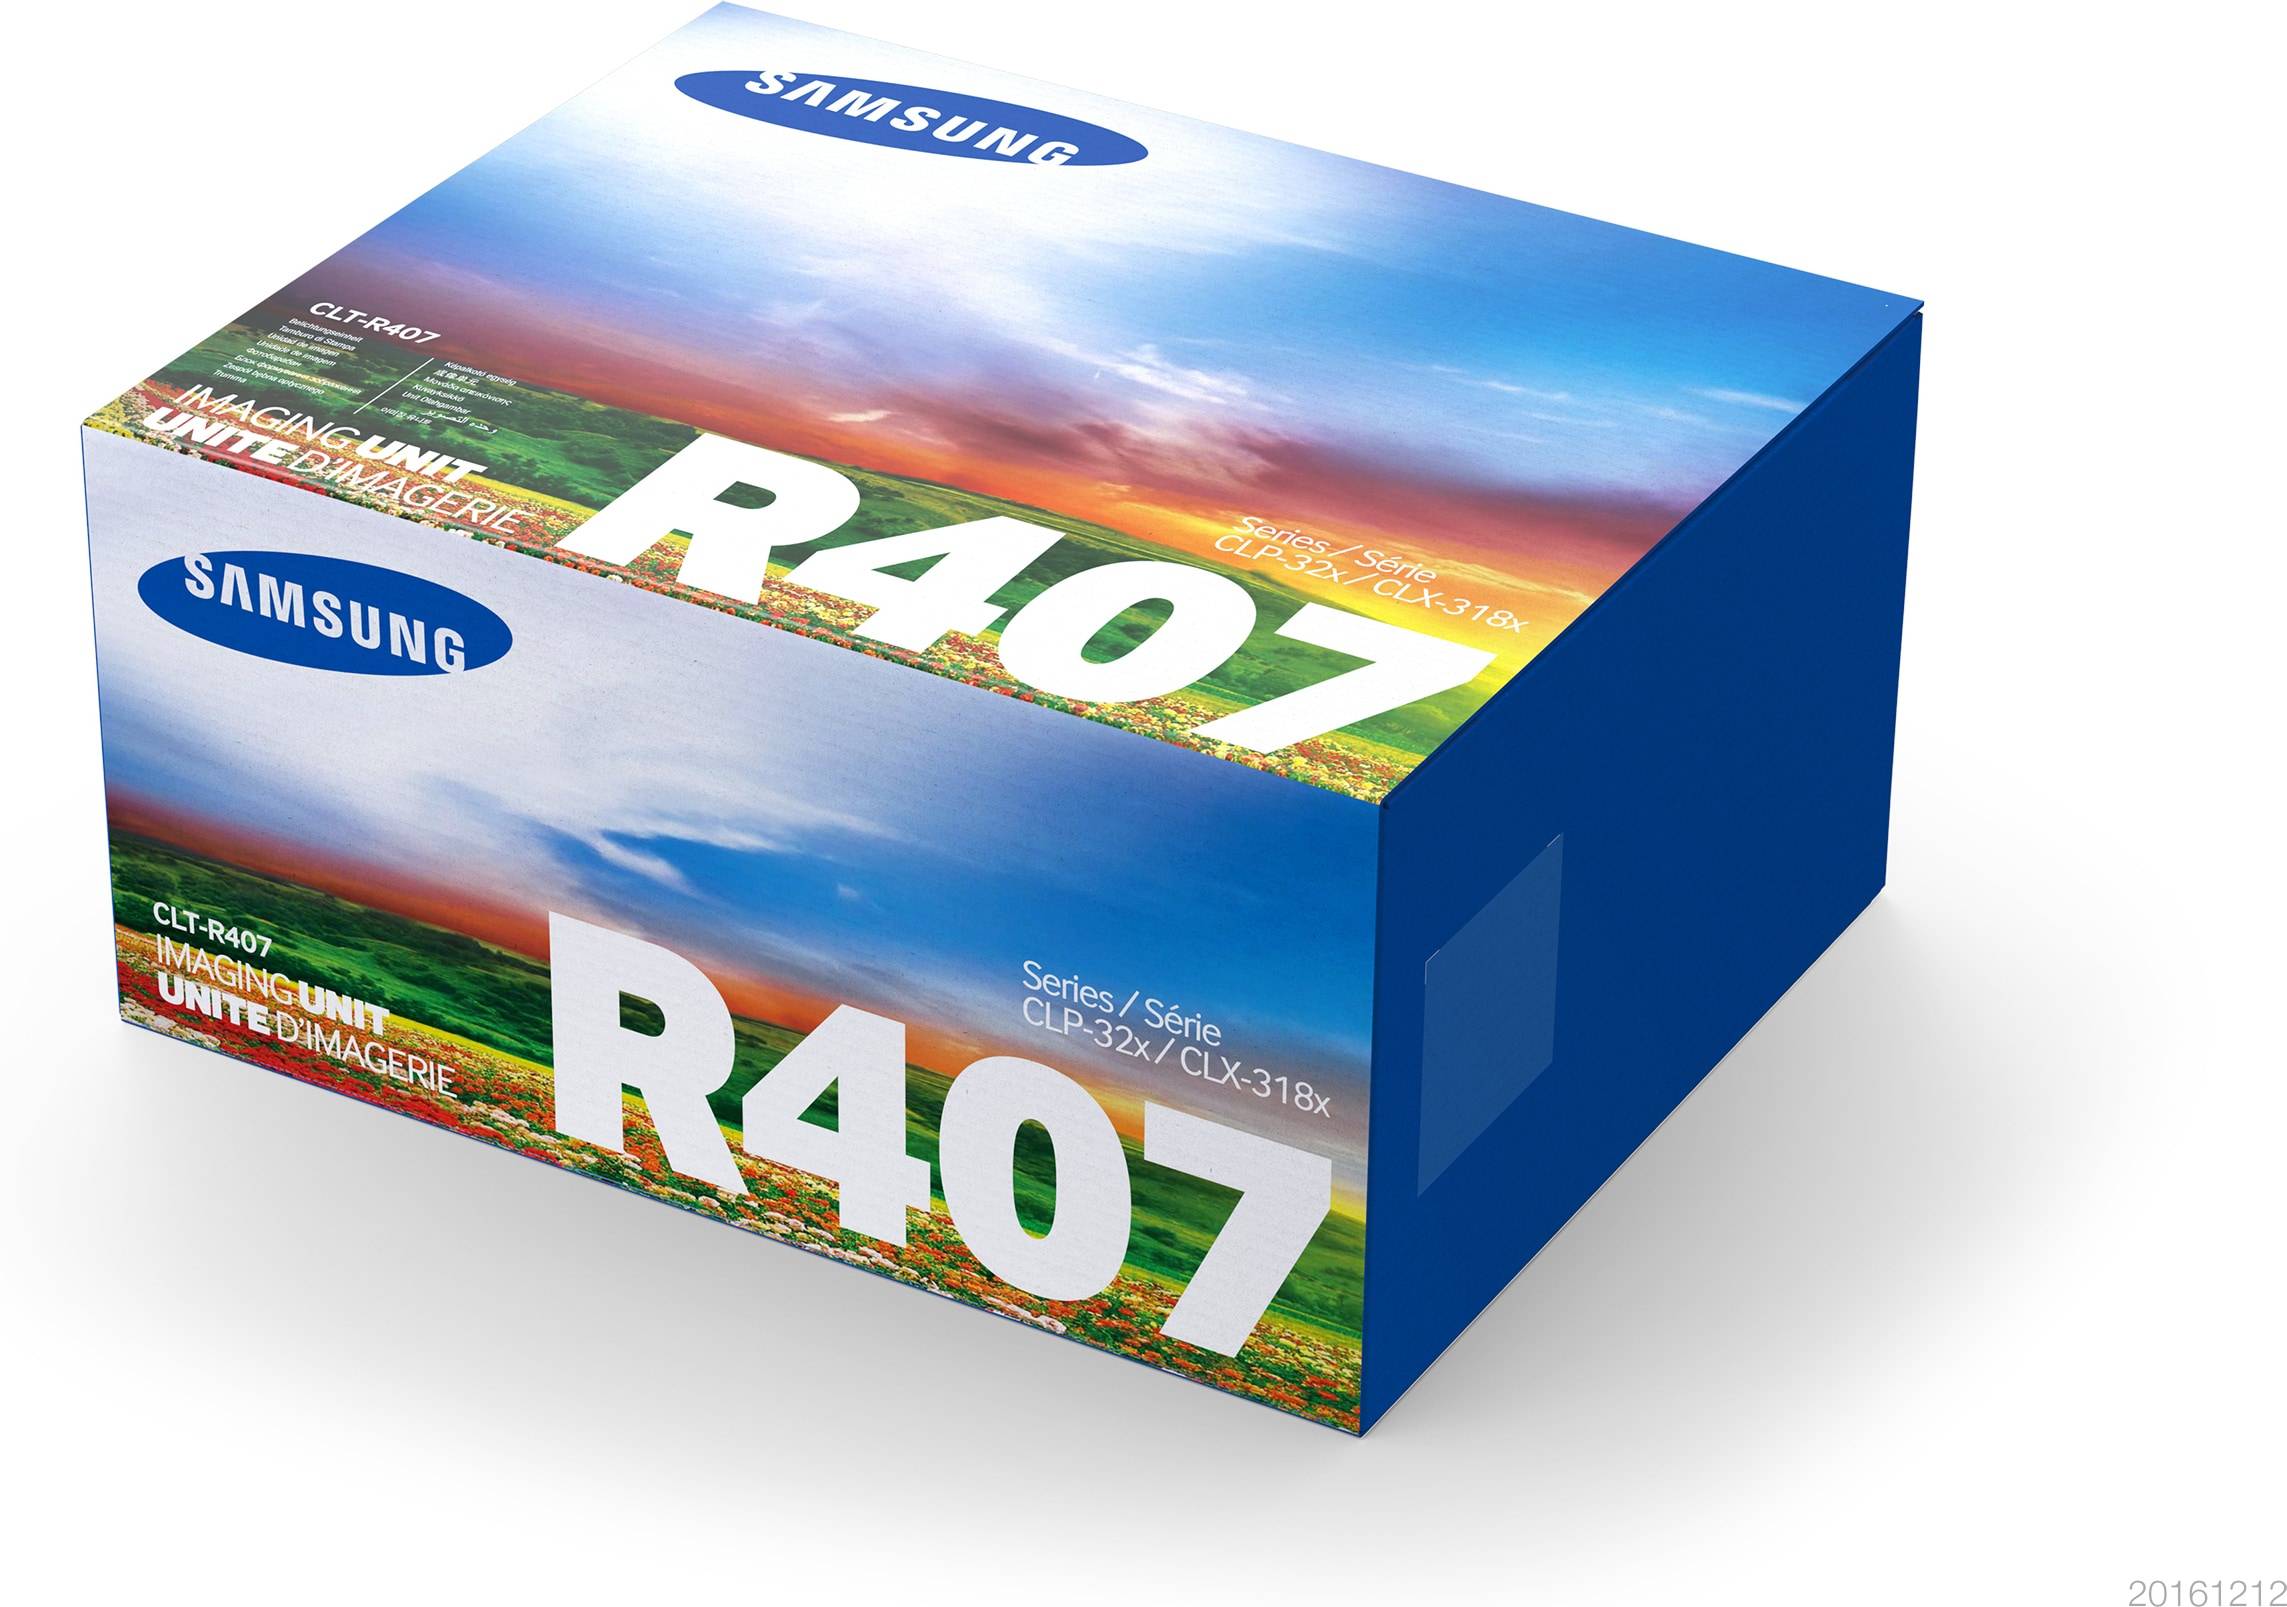 Rca Informatique - Image du produit : SA CLT-R407 IMAGING UNIT SAMSUNG